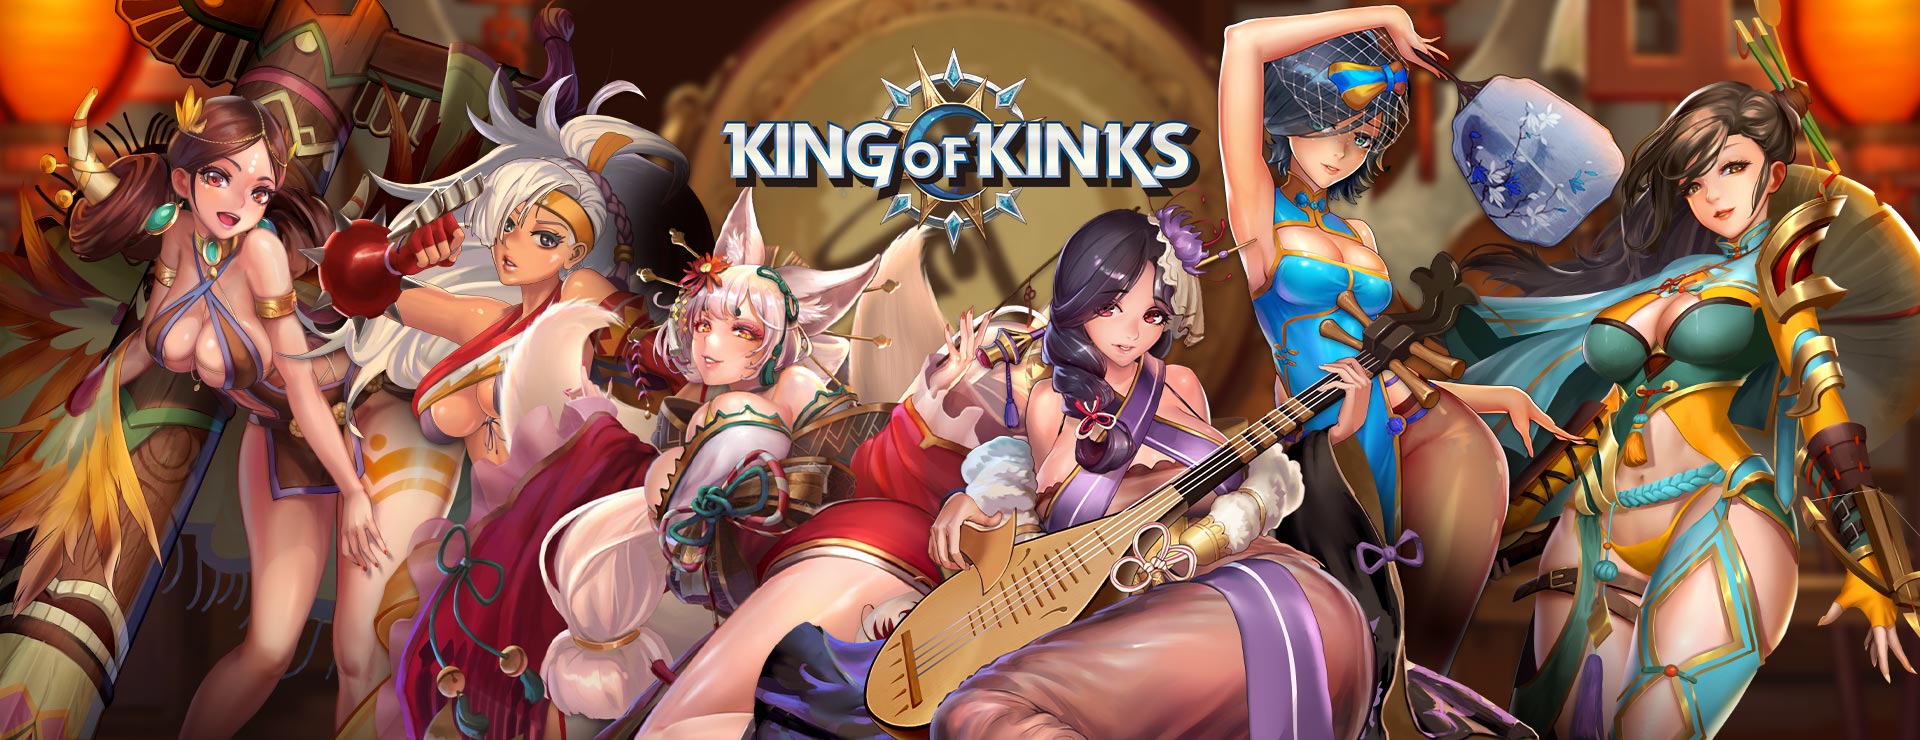 King of Kinks Game - Przygodowa akcji Gra